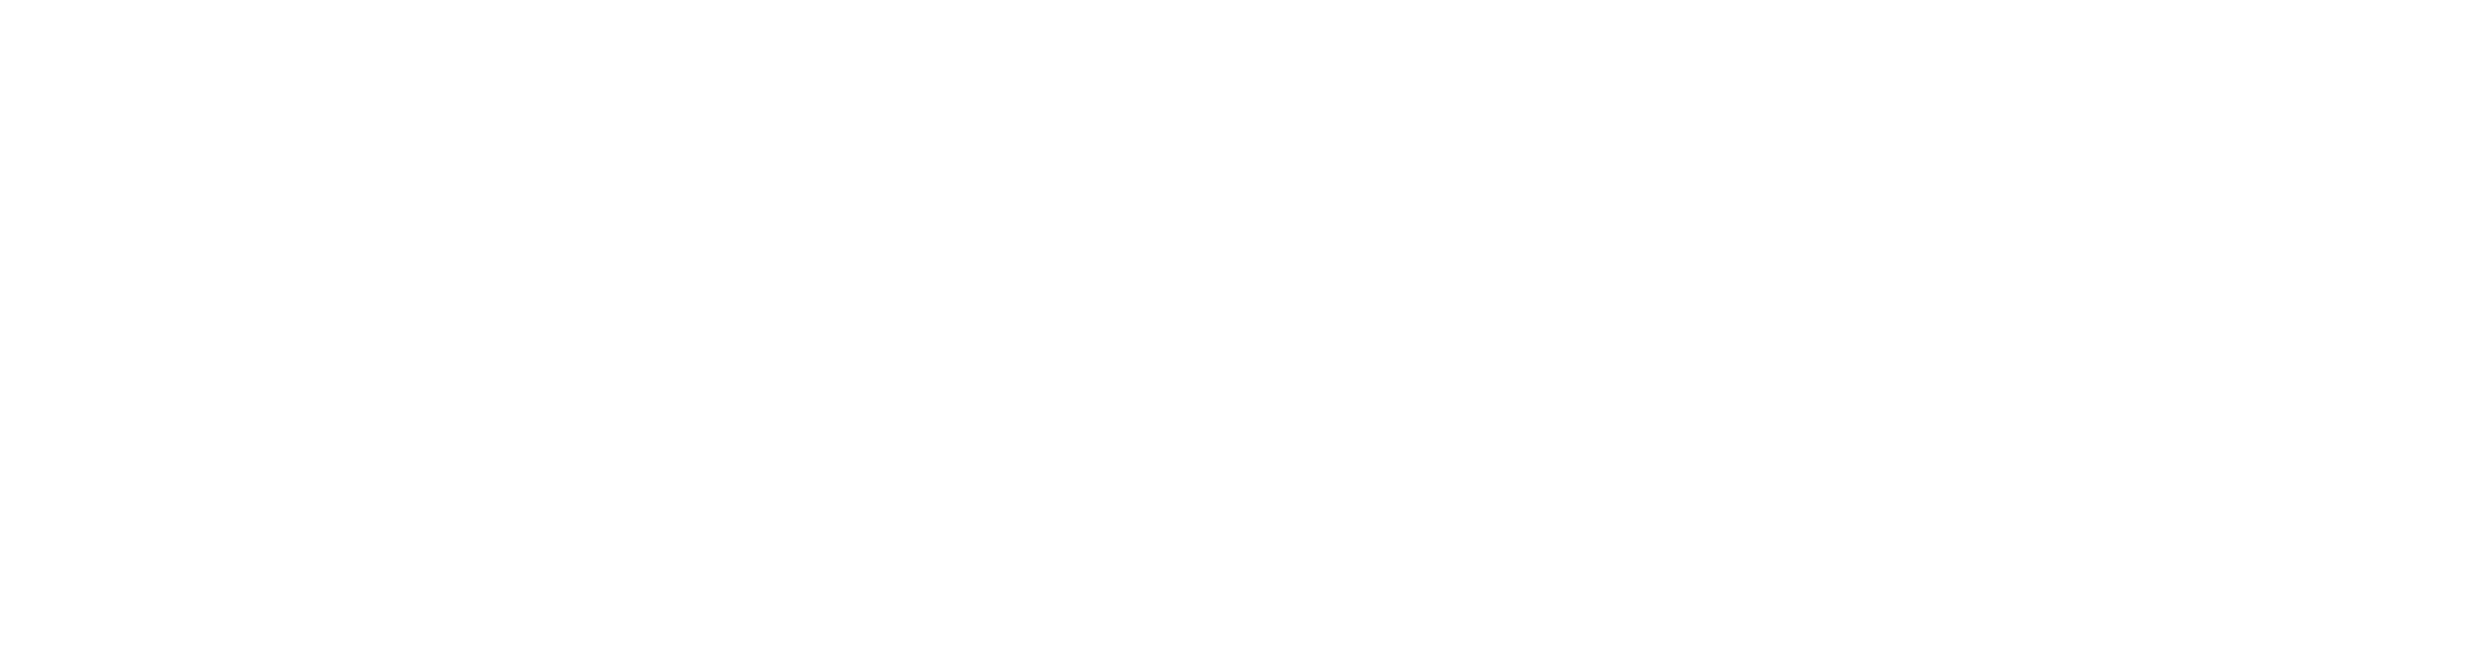 Tribridge Residential logo